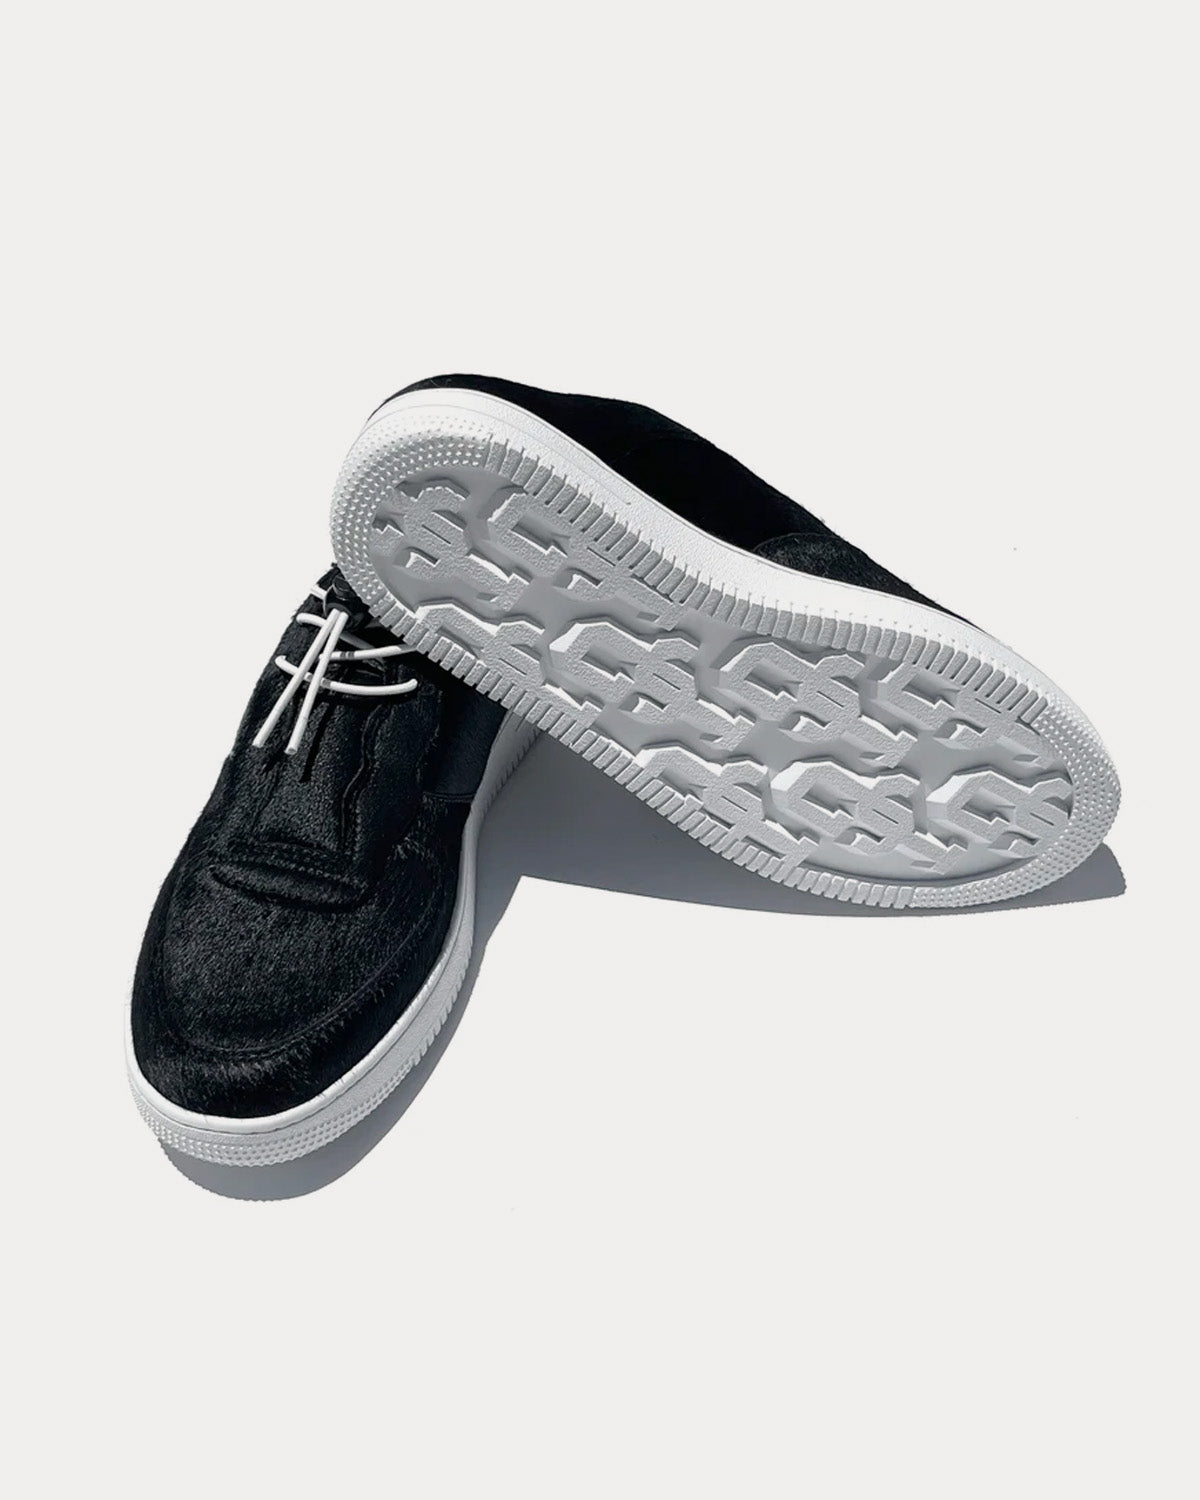 John Geiger - GF-01 Mule Calf Hair Black Slip On Sneakers